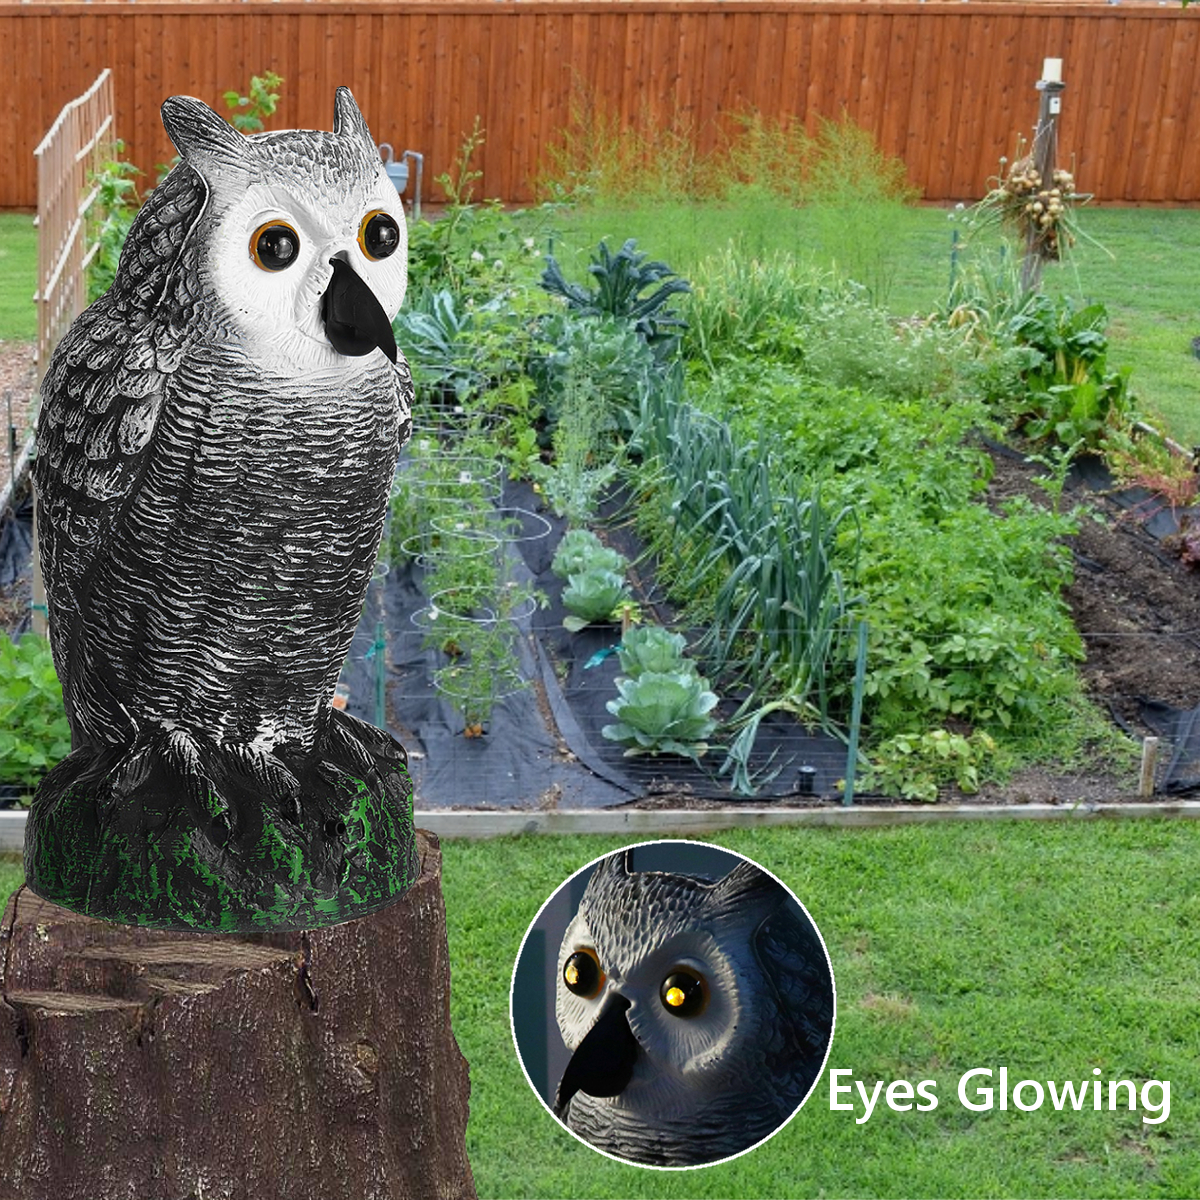 Dummy-Owl-Hunting-Decoy-Glowing-Eyes-Sound-Garden-Decor-1639223-6